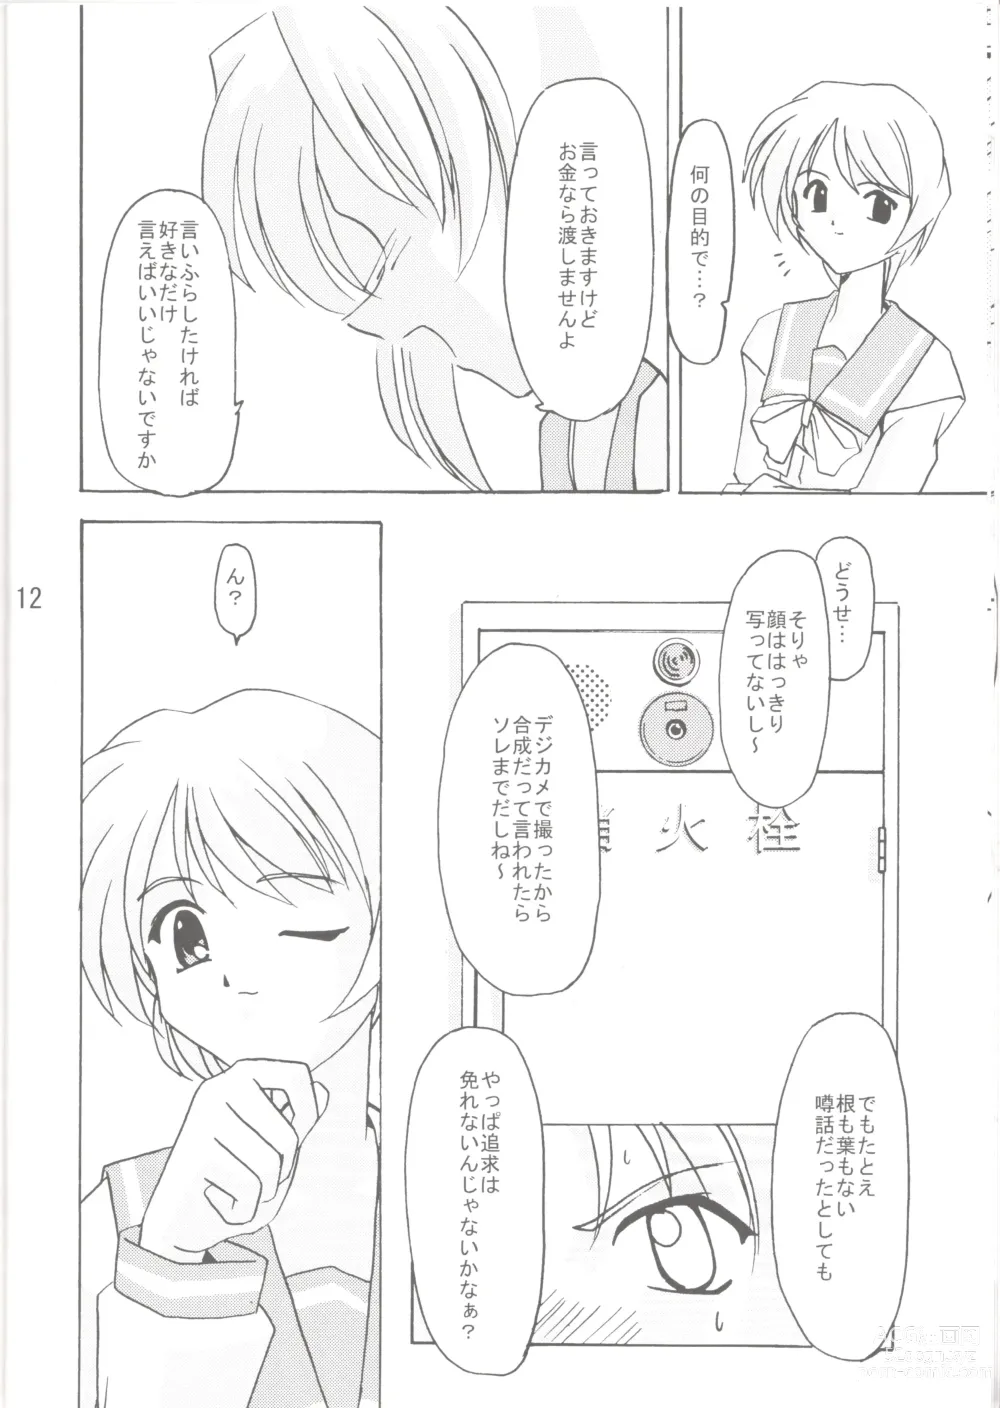 Page 13 of doujinshi Lunasol Festa